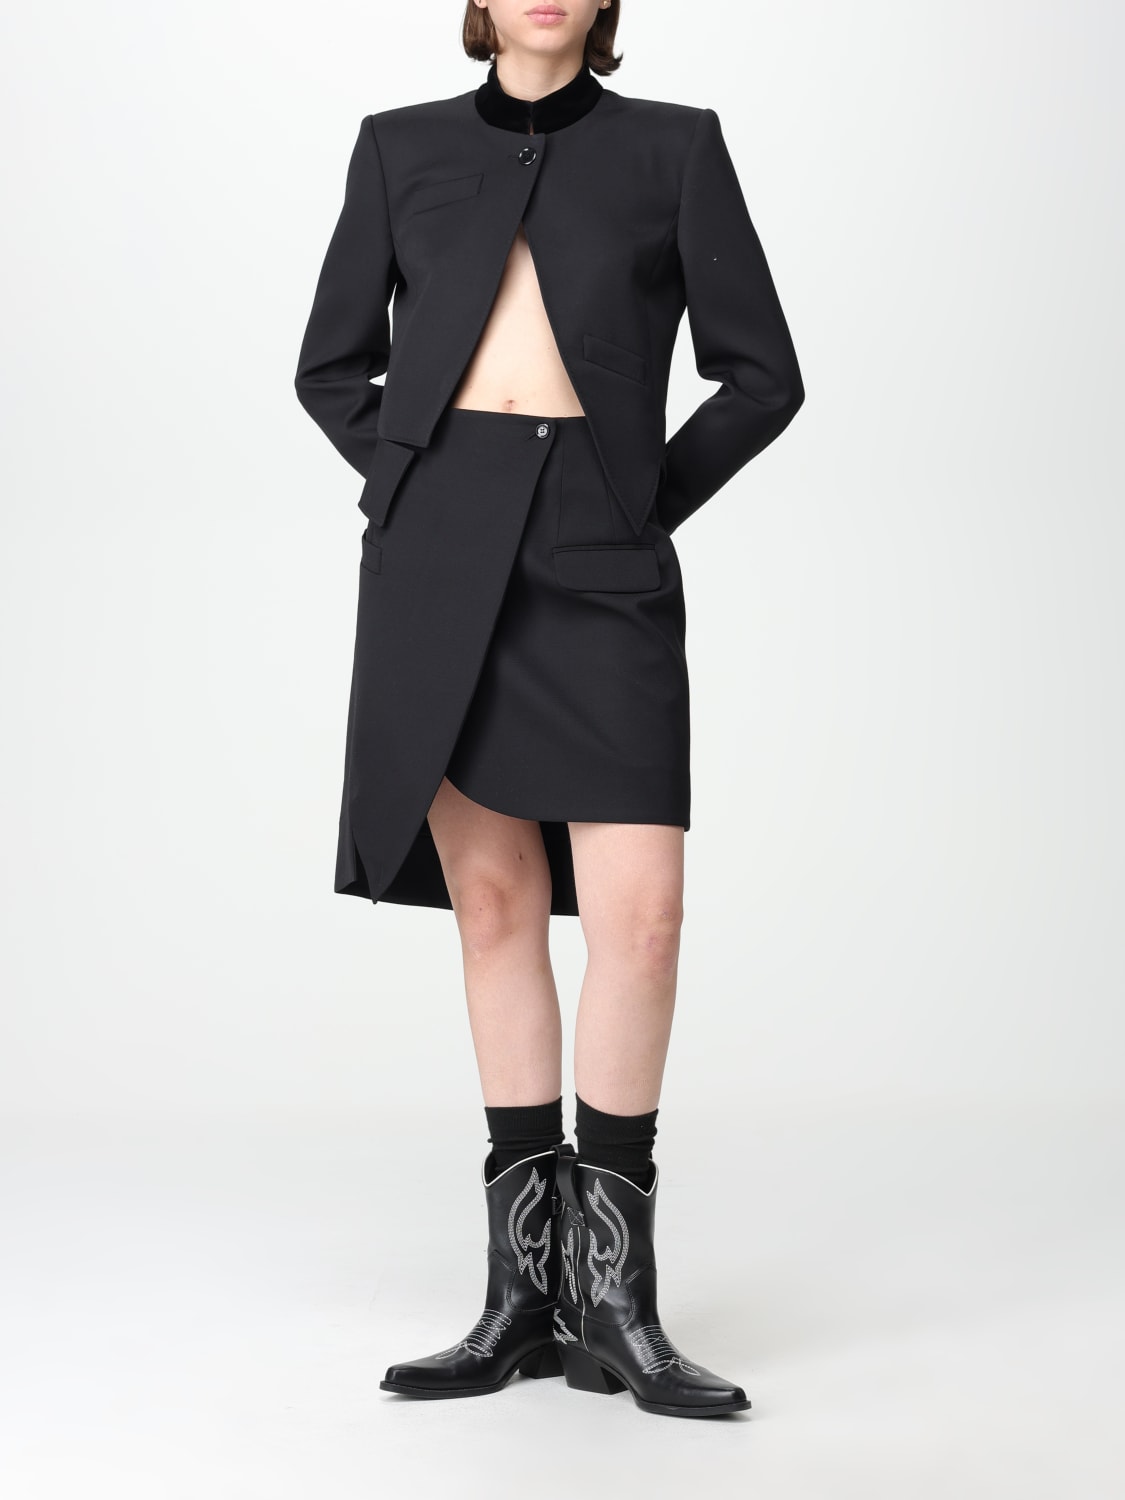 MOSCHINO COUTURE: women's skirt - Black | Moschino Couture skirt ...